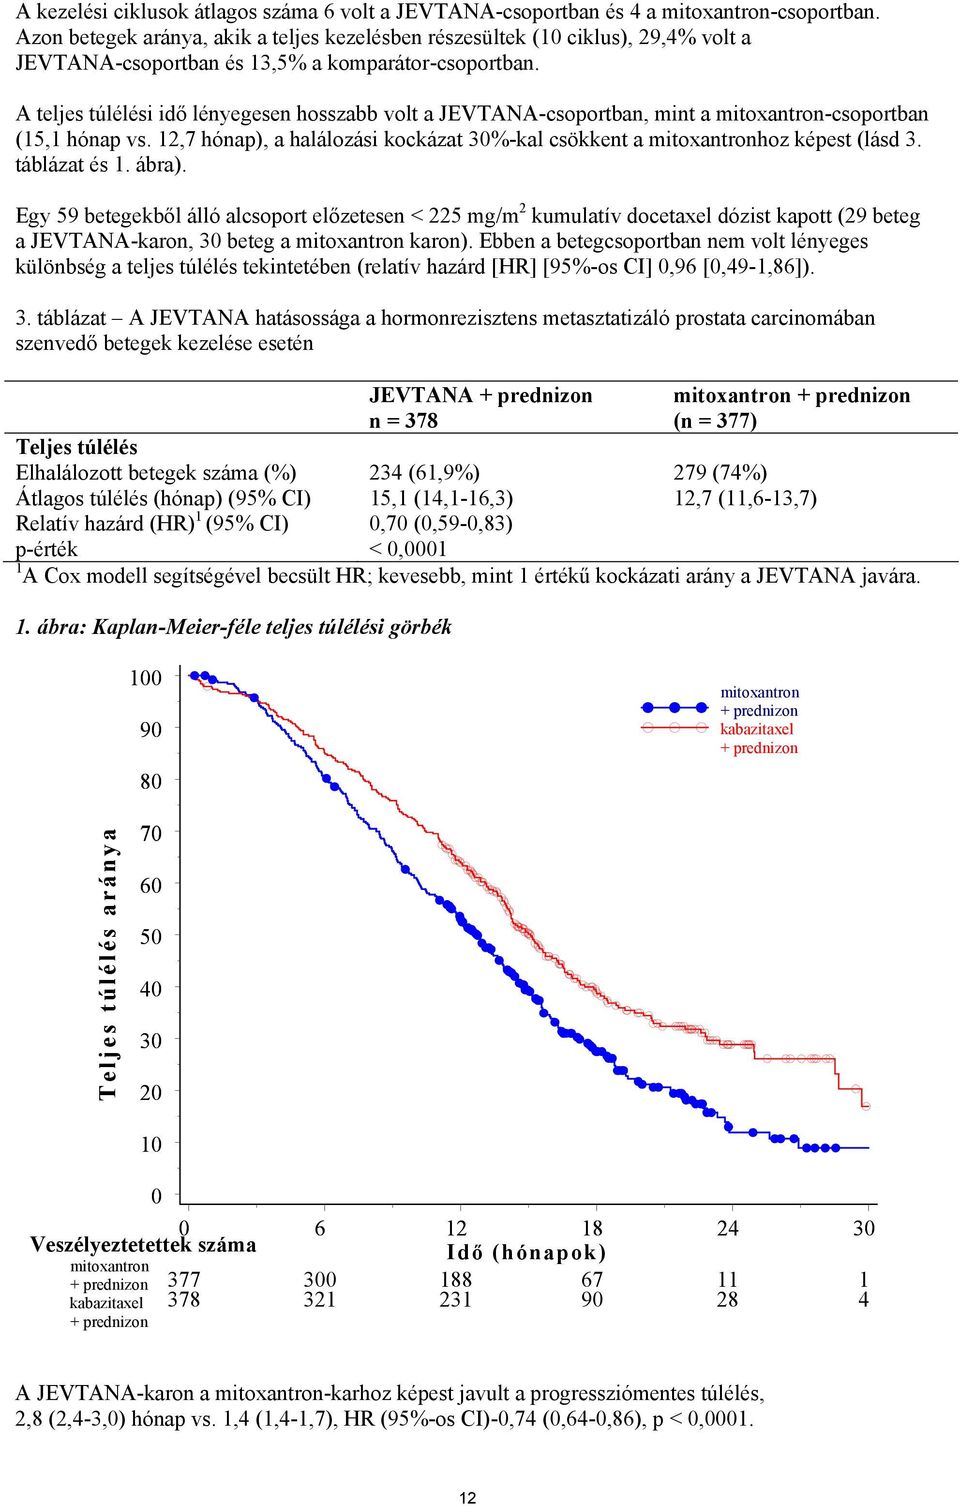 A teljes túlélési idő lényegesen hosszabb volt a JEVTANA-csoportban, mint a mitoxantron-csoportban (15,1 hónap vs. 12,7 hónap), a halálozási kockázat 30%-kal csökkent a mitoxantronhoz képest (lásd 3.